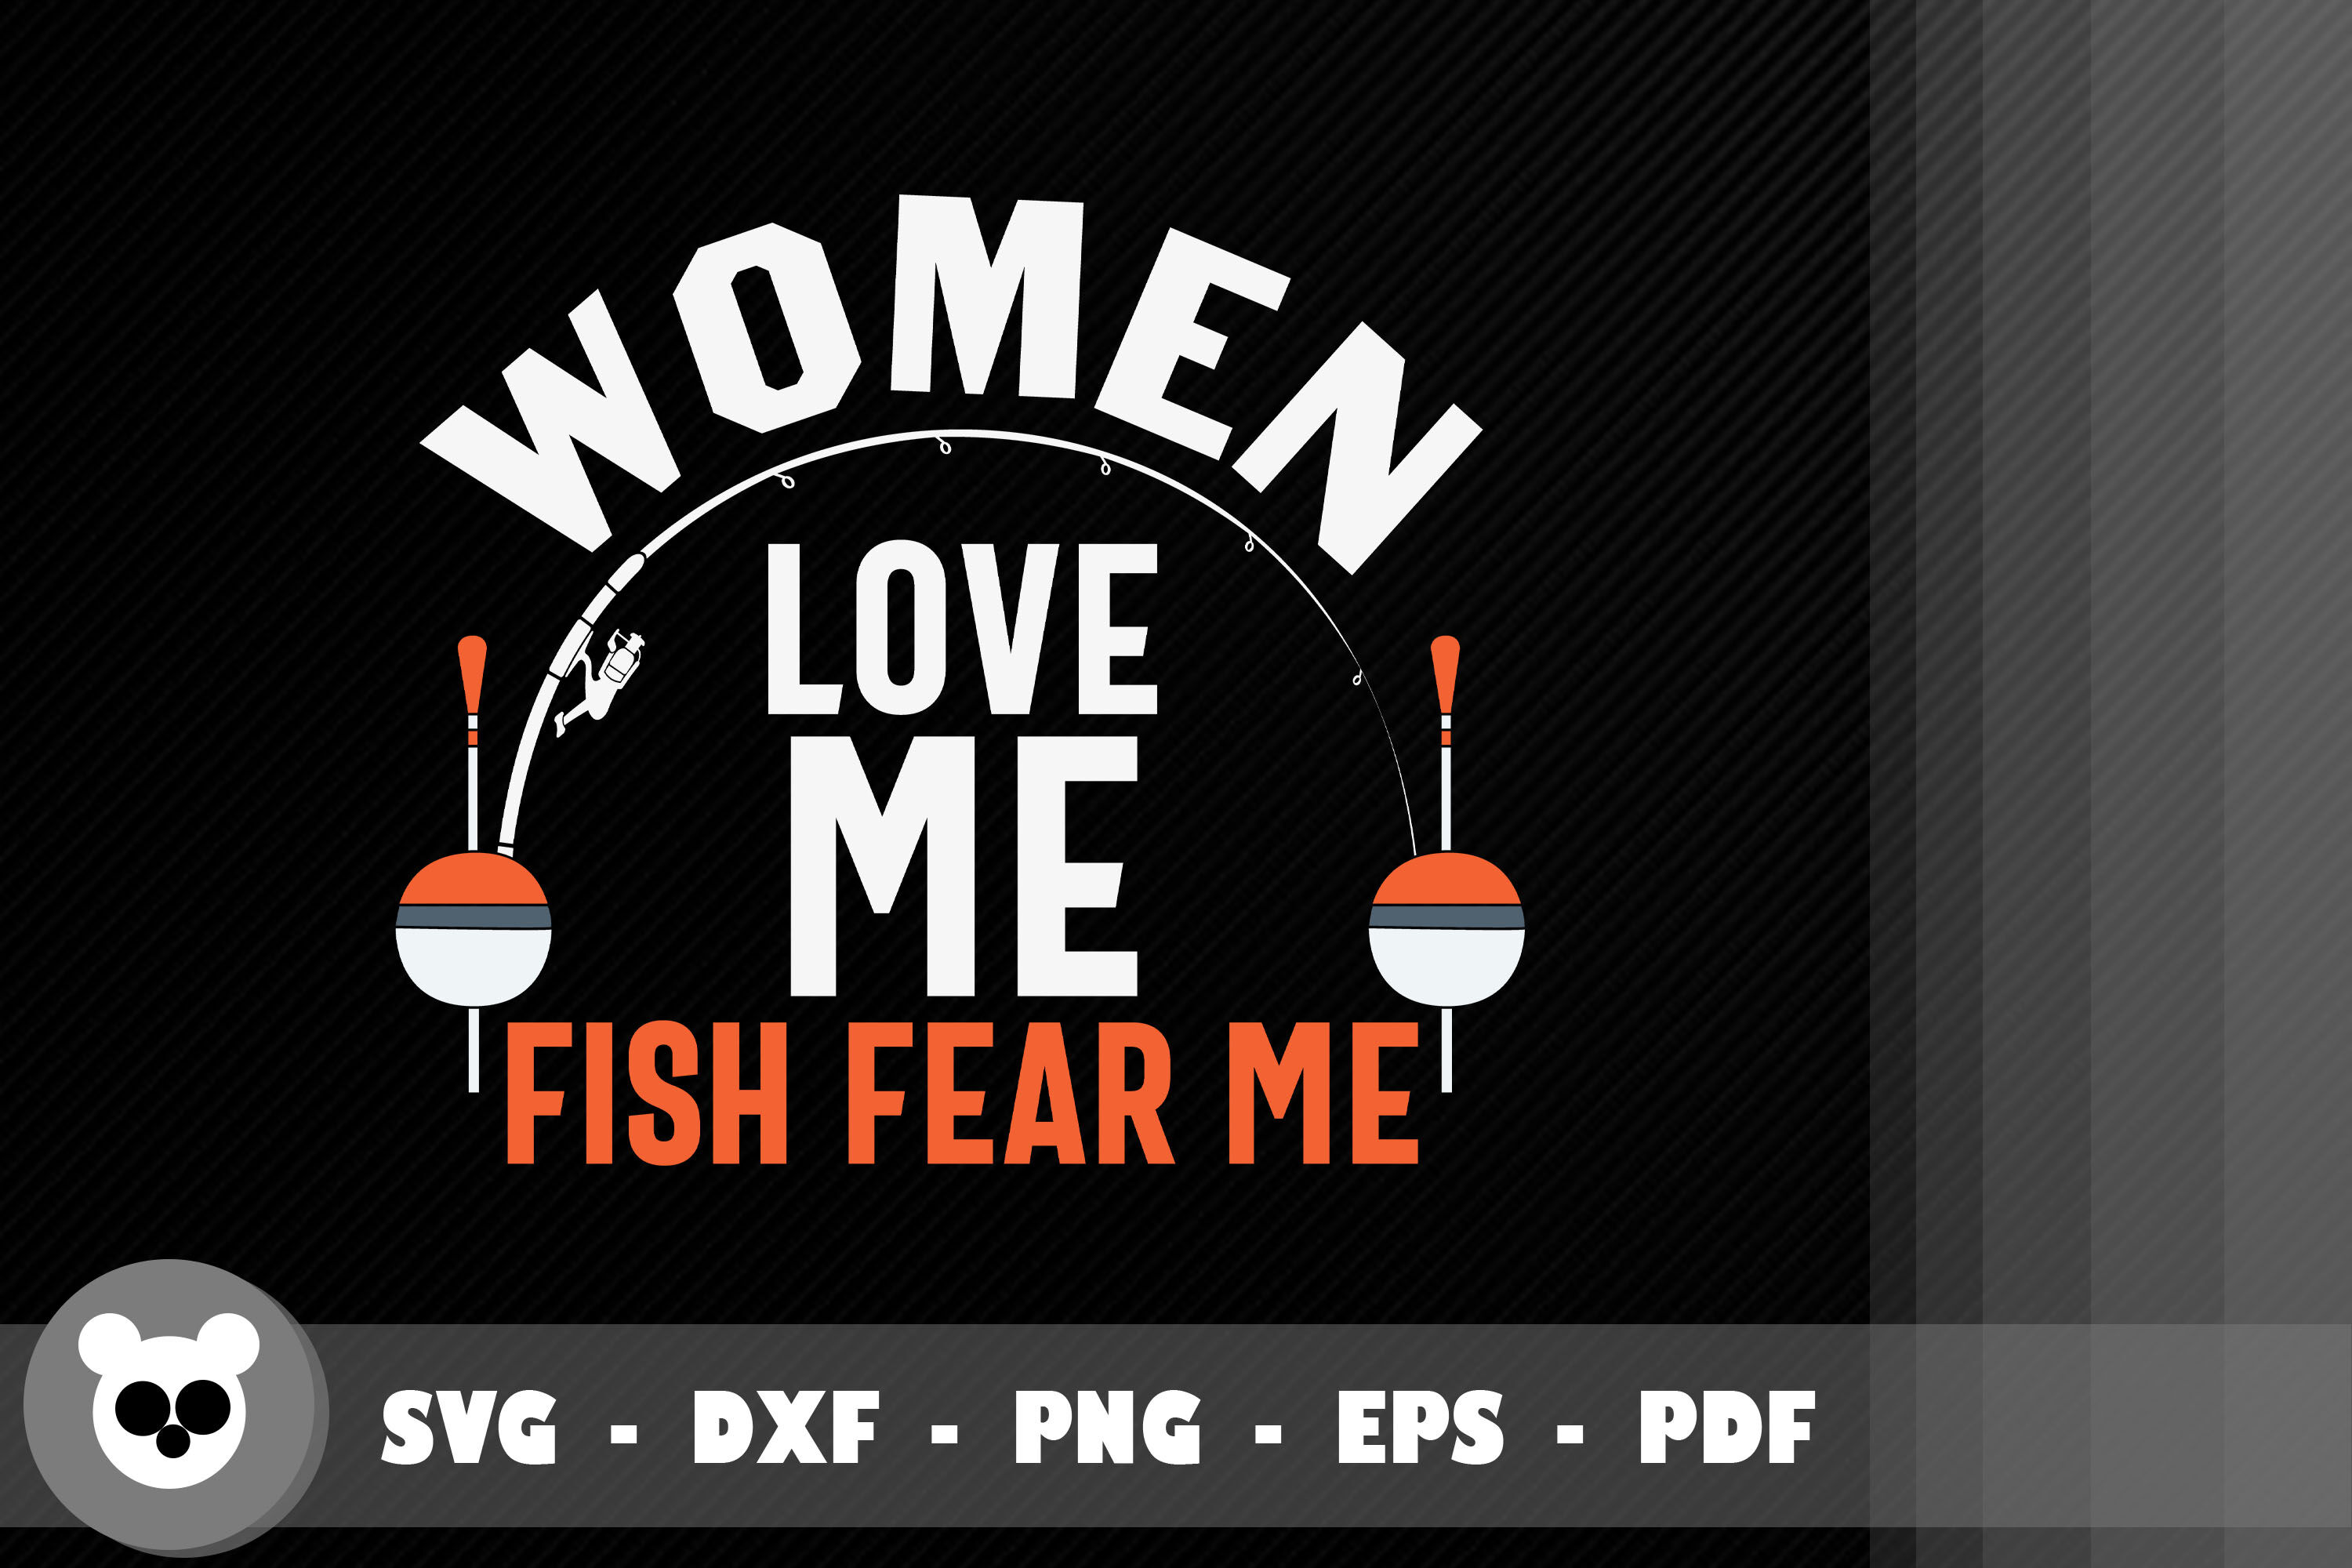 Design Woman Love Me Fish Fear Me By JobeAub